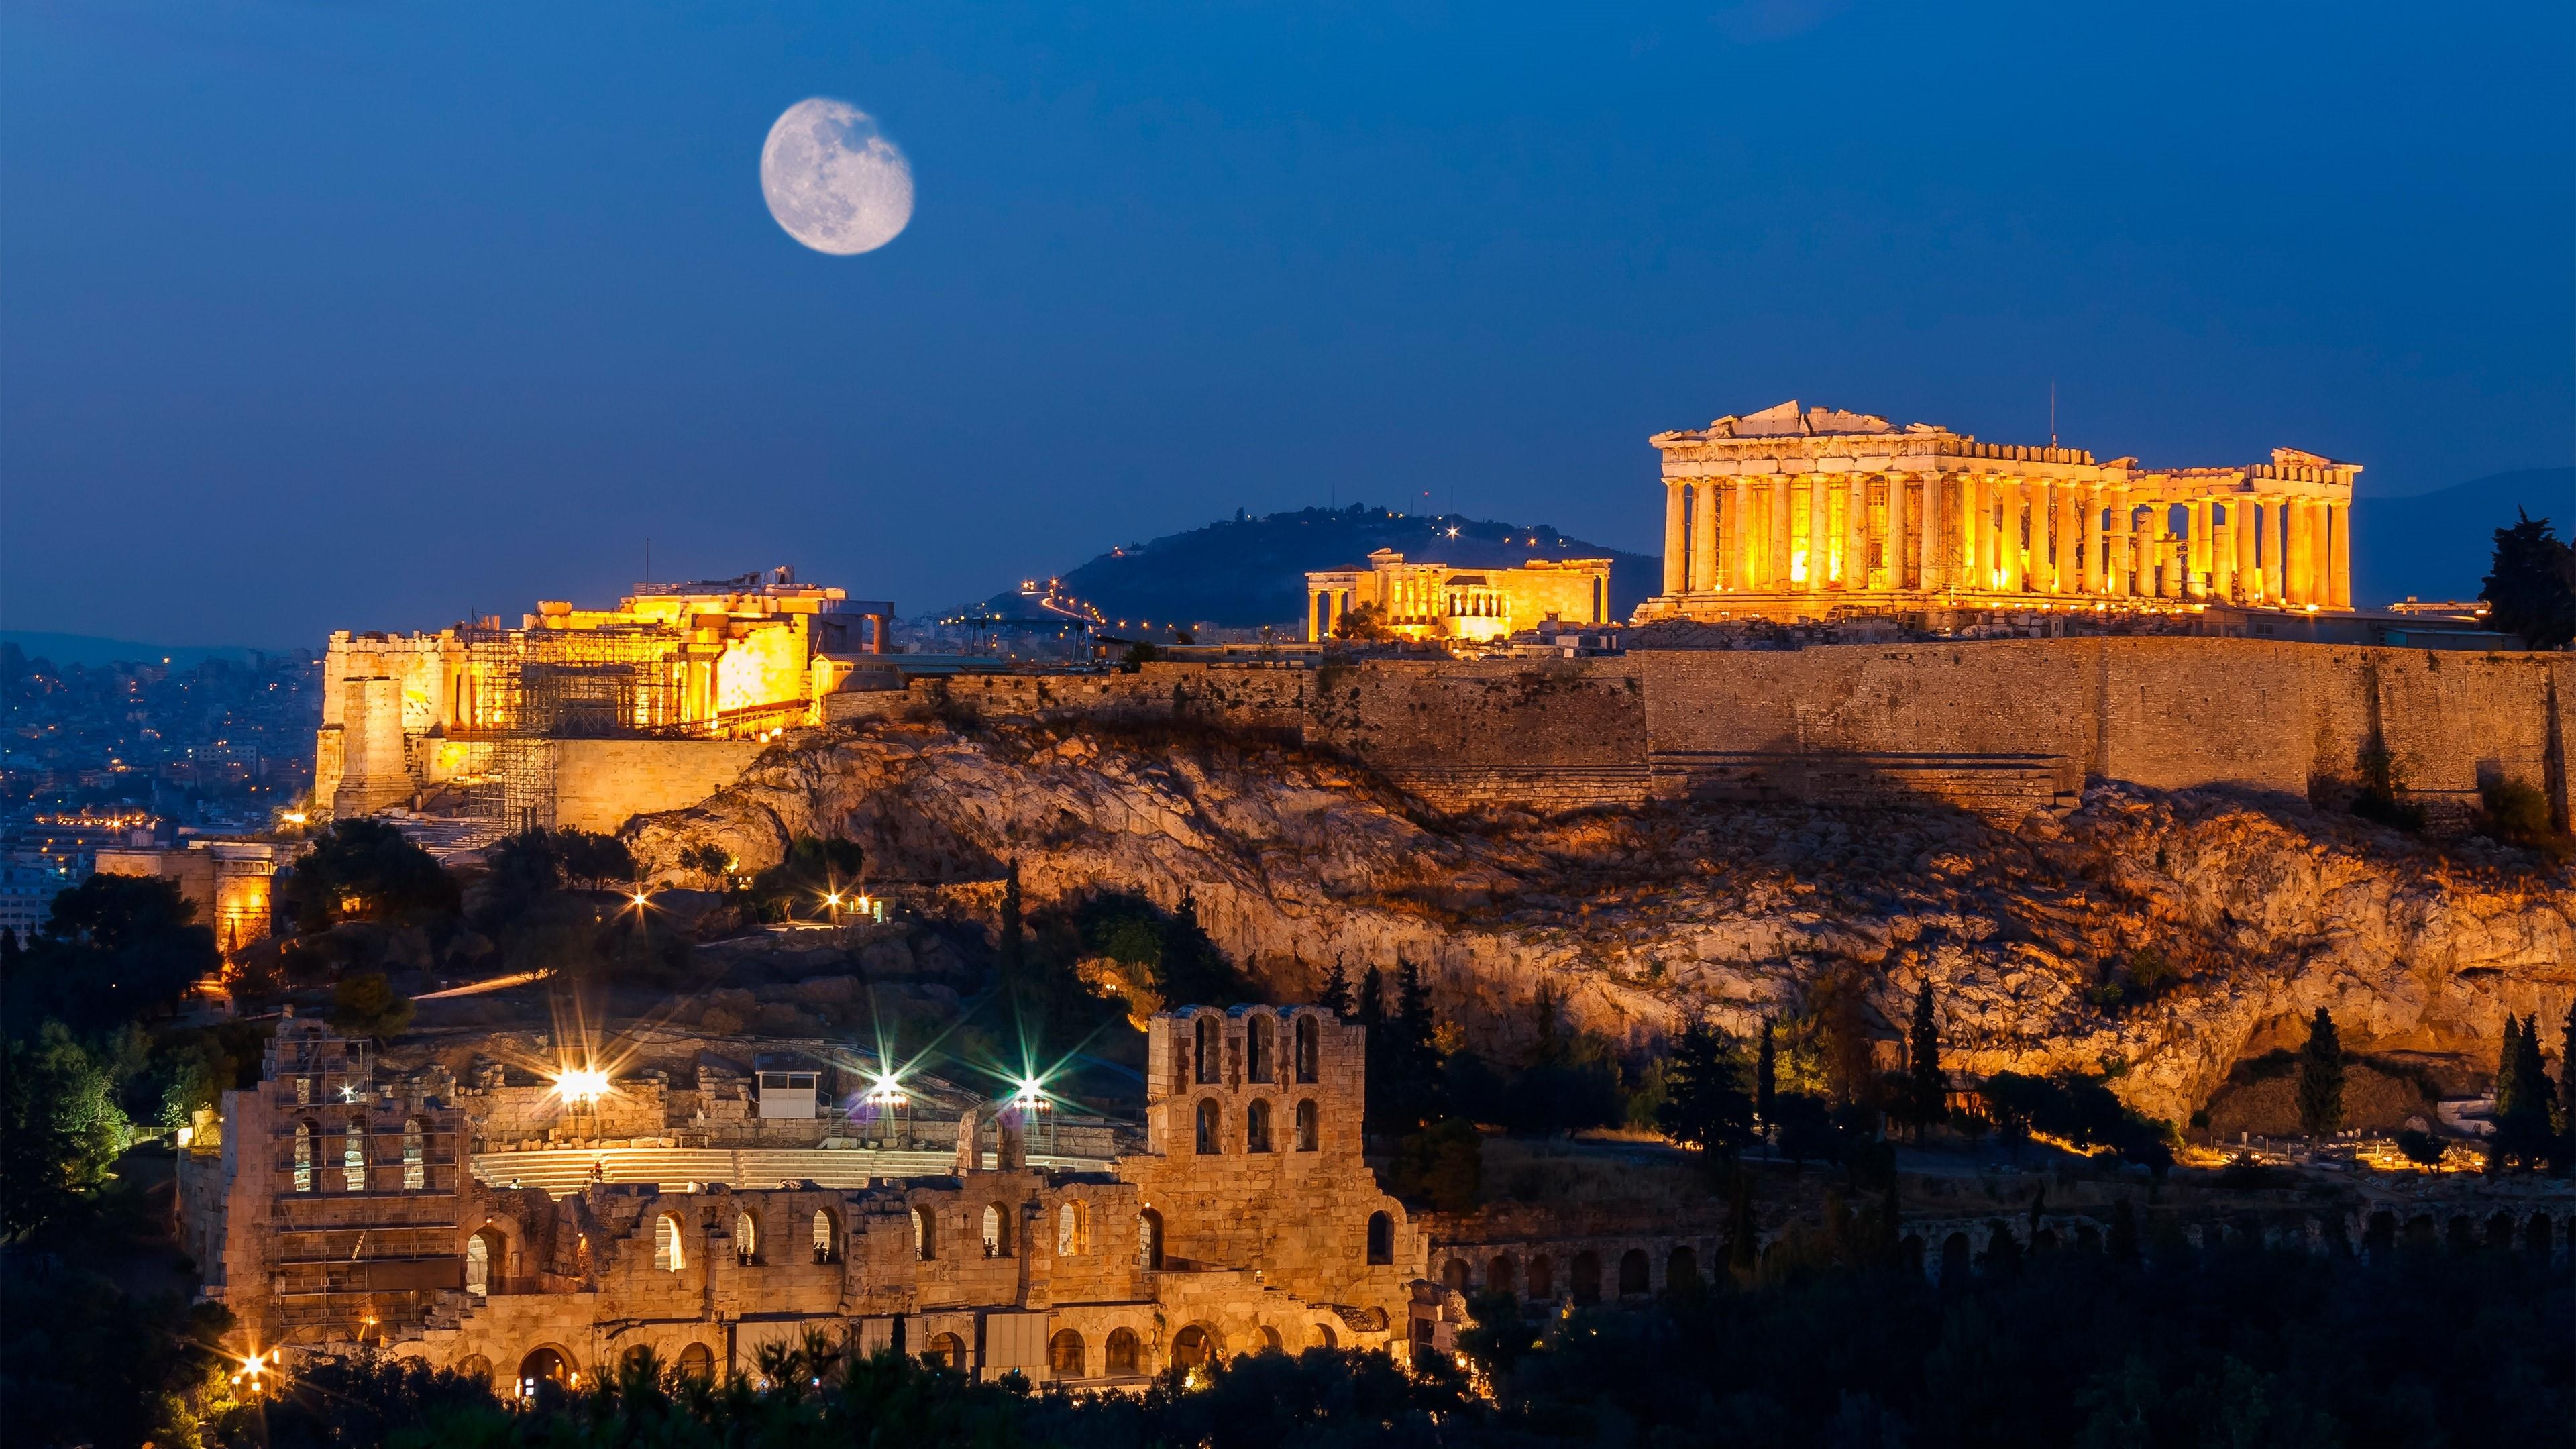 Acropolis wallpapers, Ancient Greek architecture, Iconic structure, Greece's gem, 3840x2160 4K Desktop